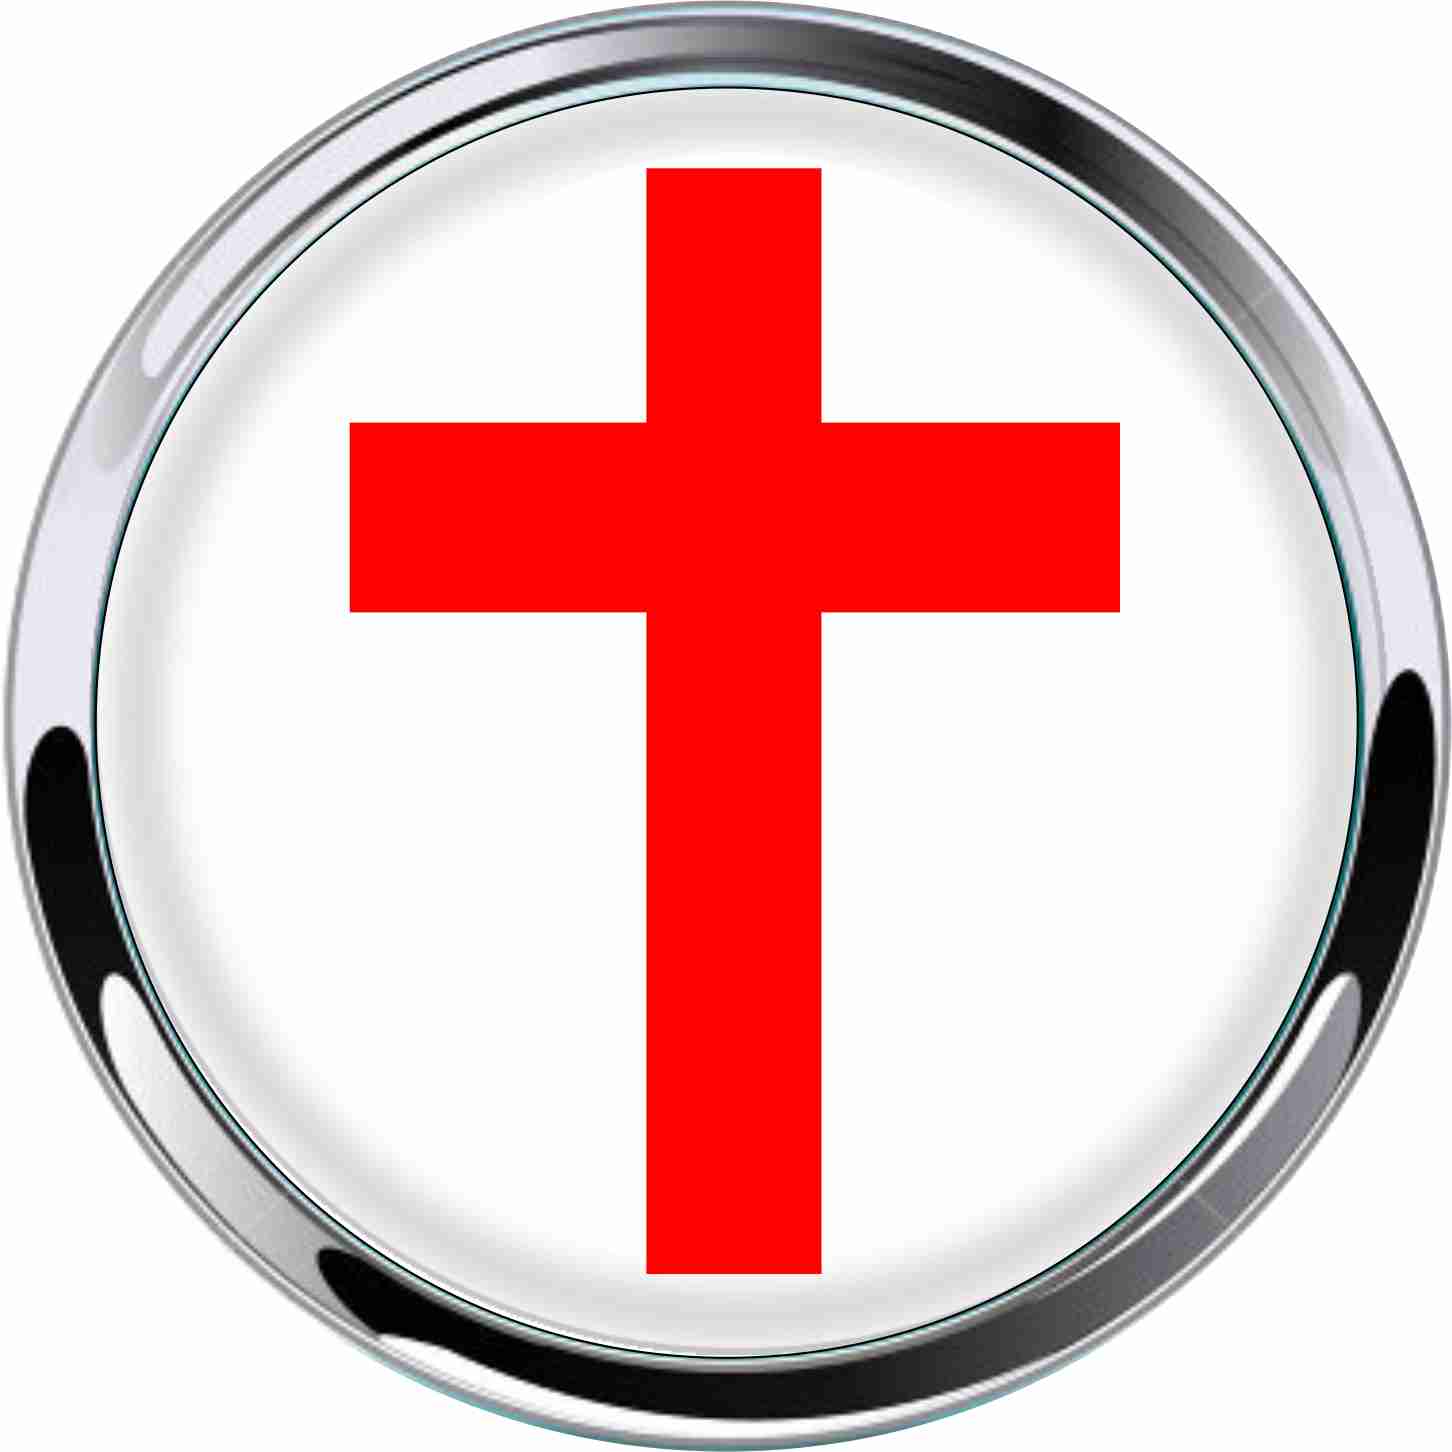 Red Cross Car Emblem